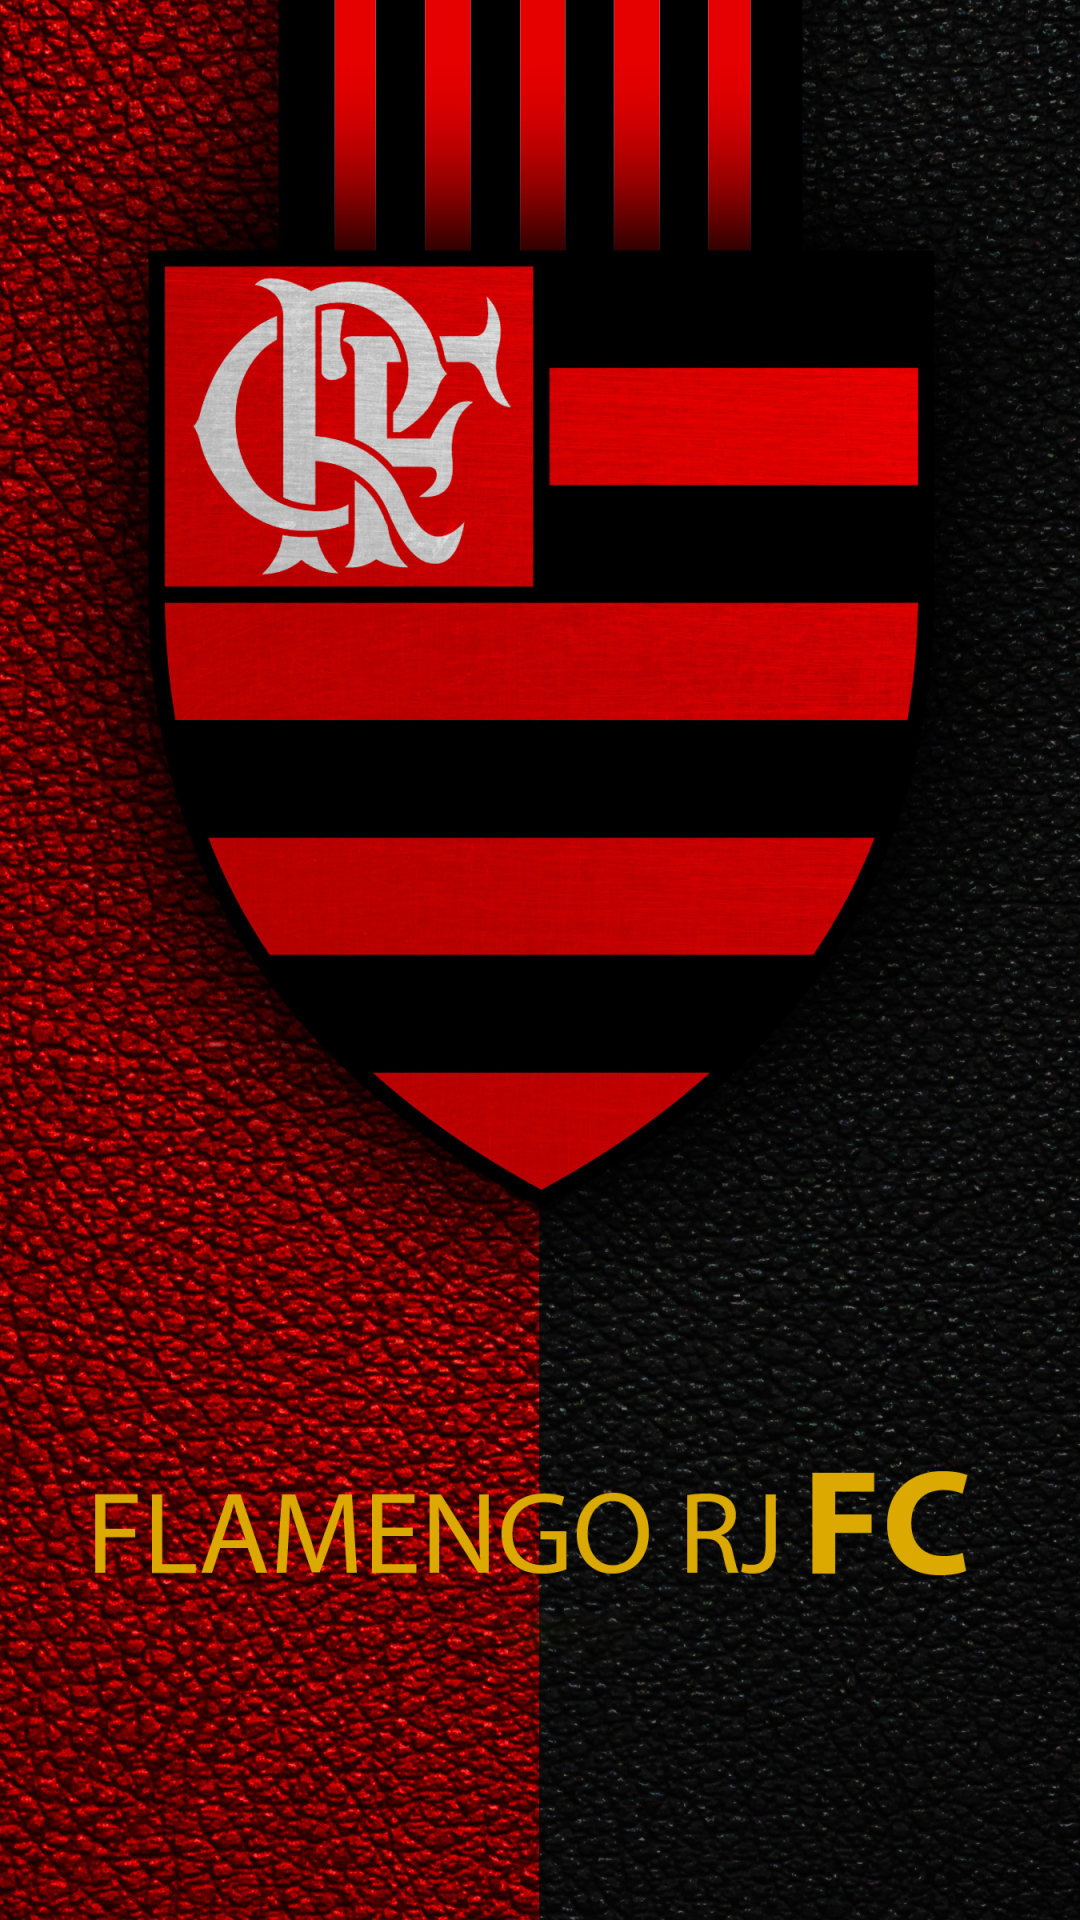 clube de regatas do flamengo, sports, soccer, logo